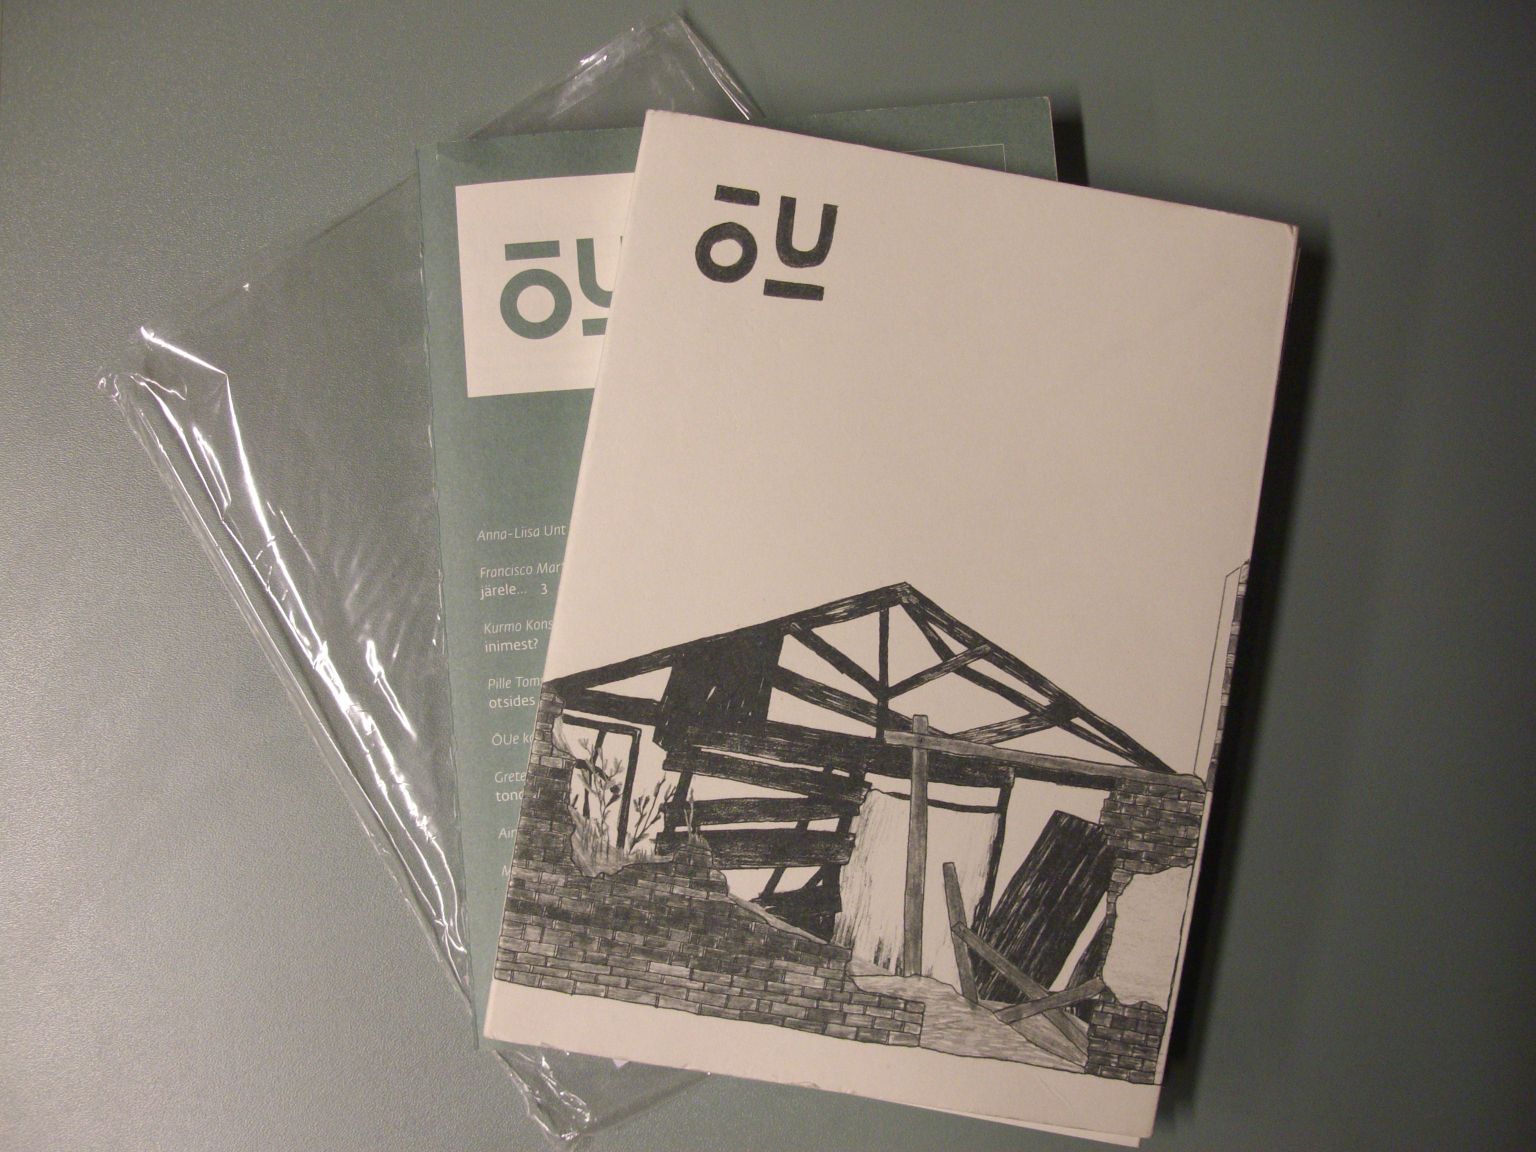 Välieluruumi ajakiri Õu nr 8 ilmus kilepakendis, milles on eraldi kaaned ja lehekülgede köidetud plokk.